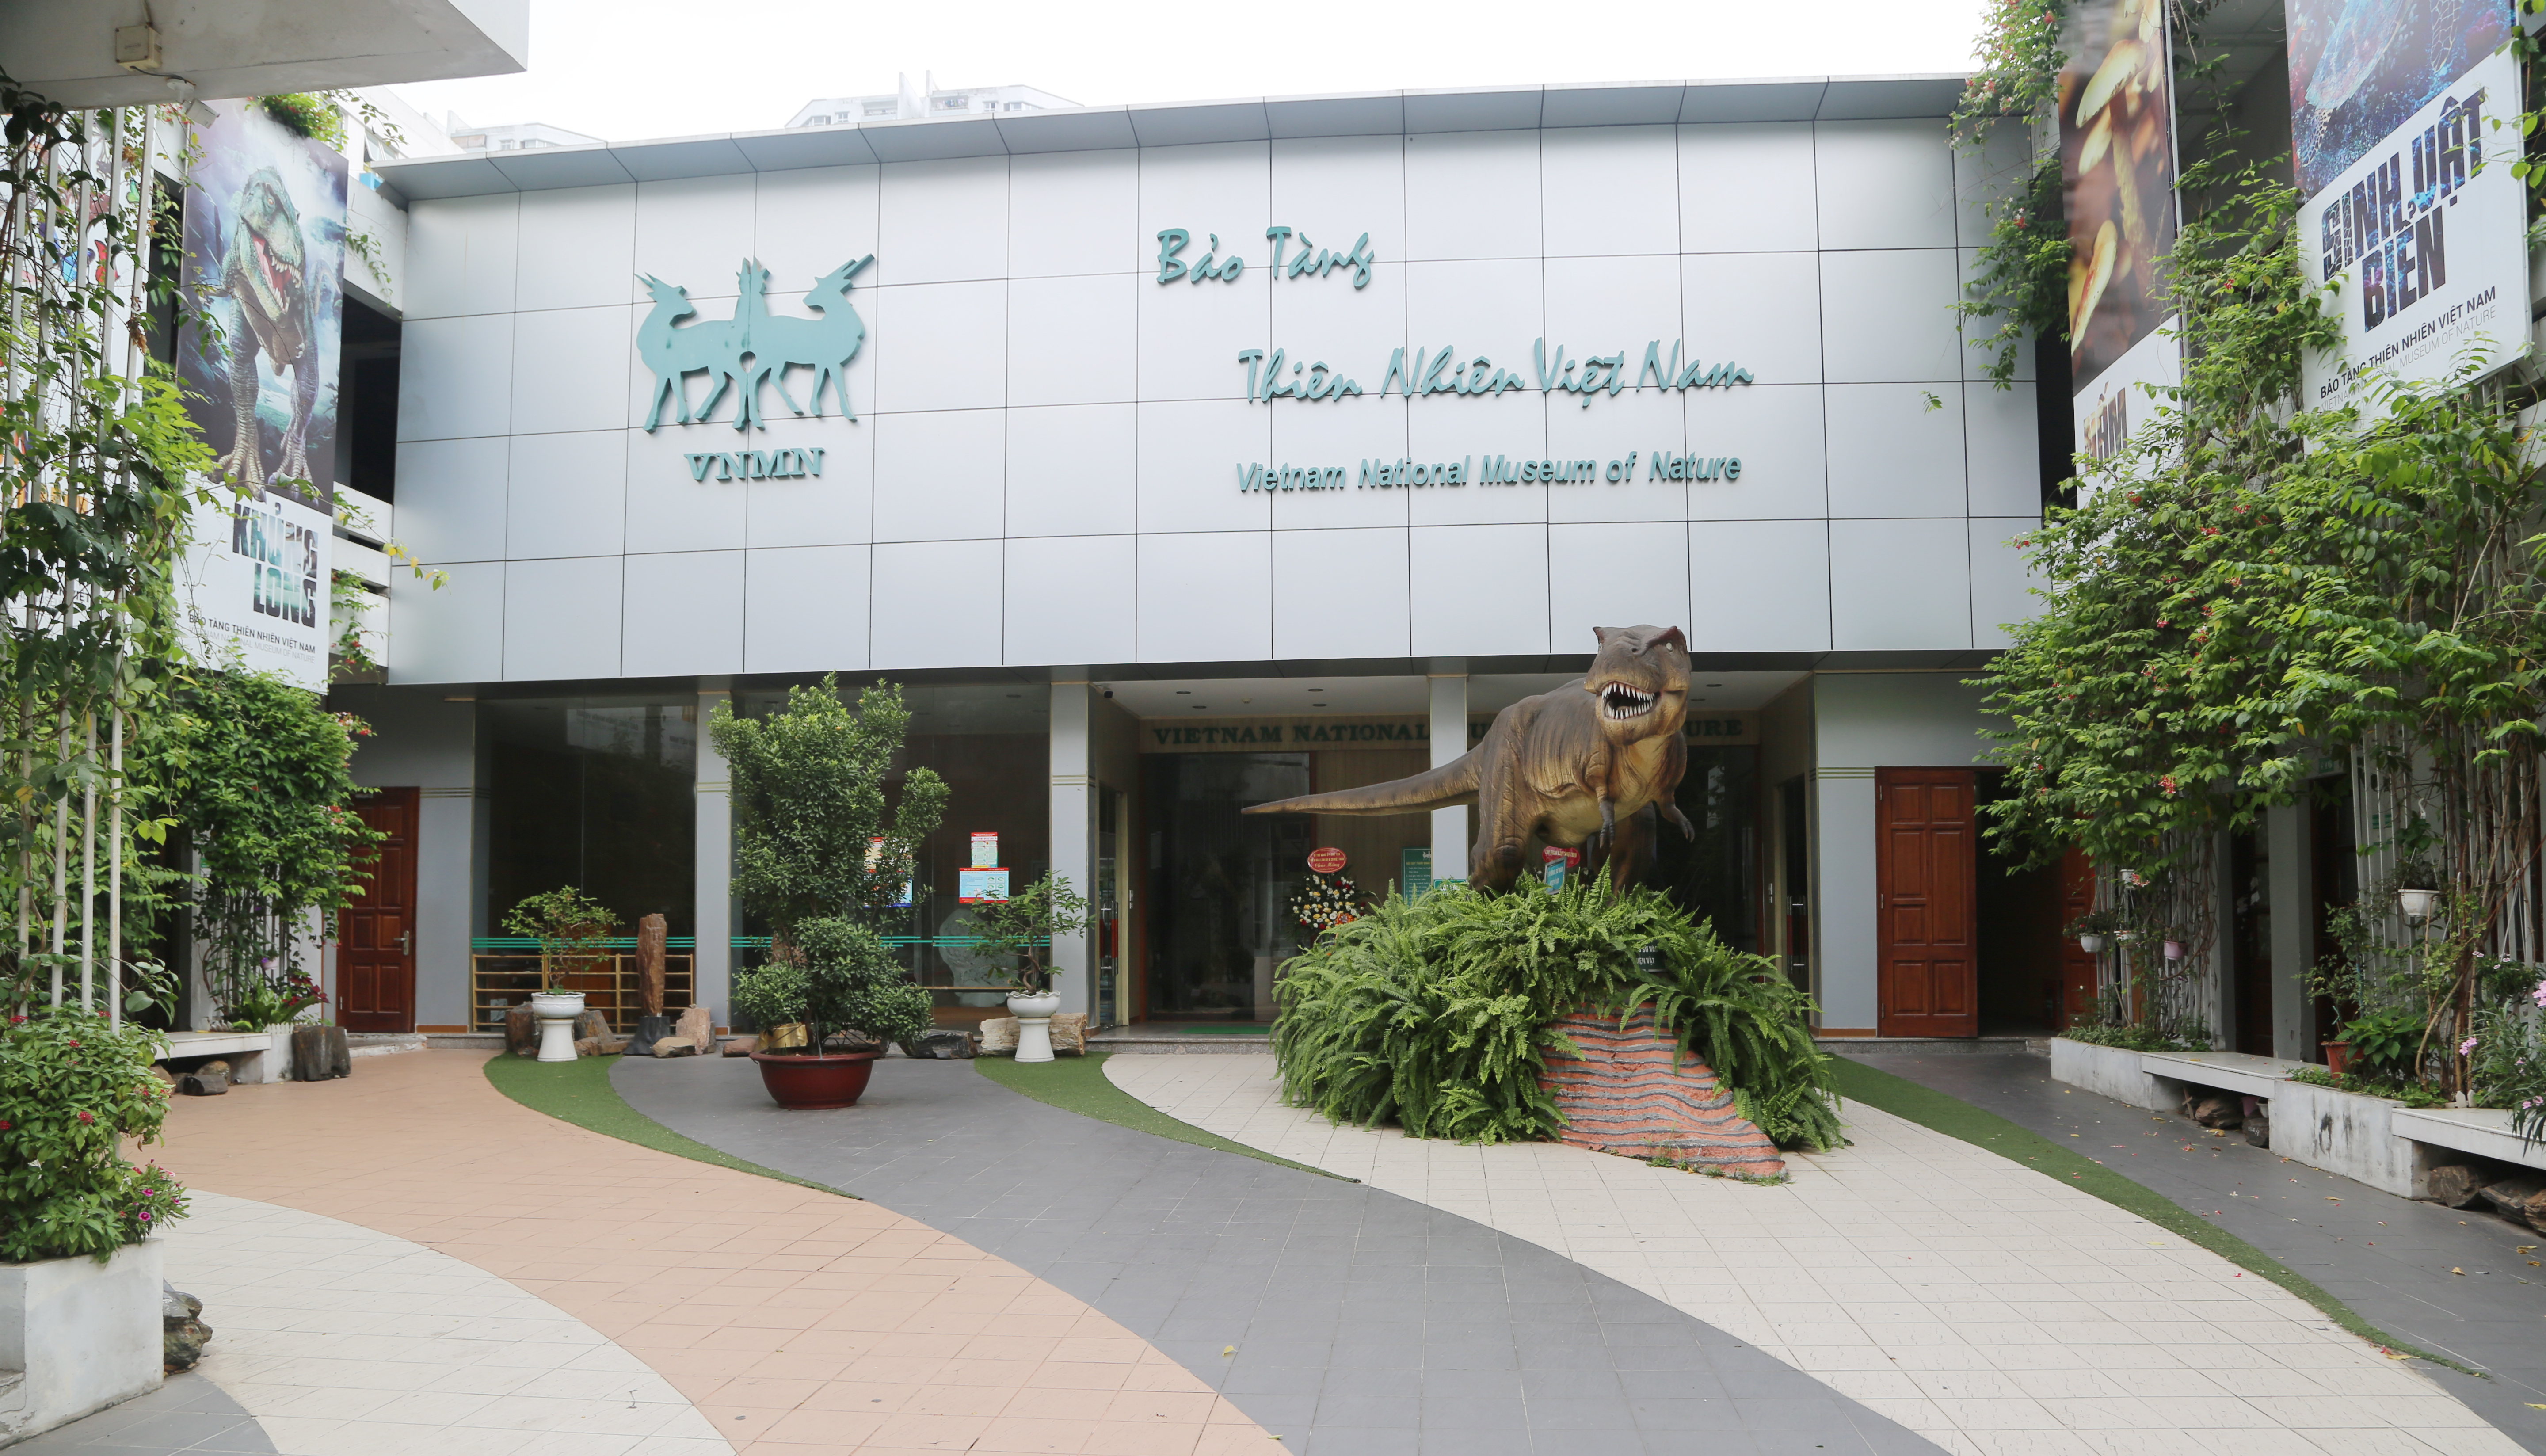 Khai mạc triển lãm ảnh “Nhịp đập đa dạng sinh học Việt Nam – Đài Loan” đã khai mạc chiều ngày 1/12 tại Bảo tàng Hà Nội